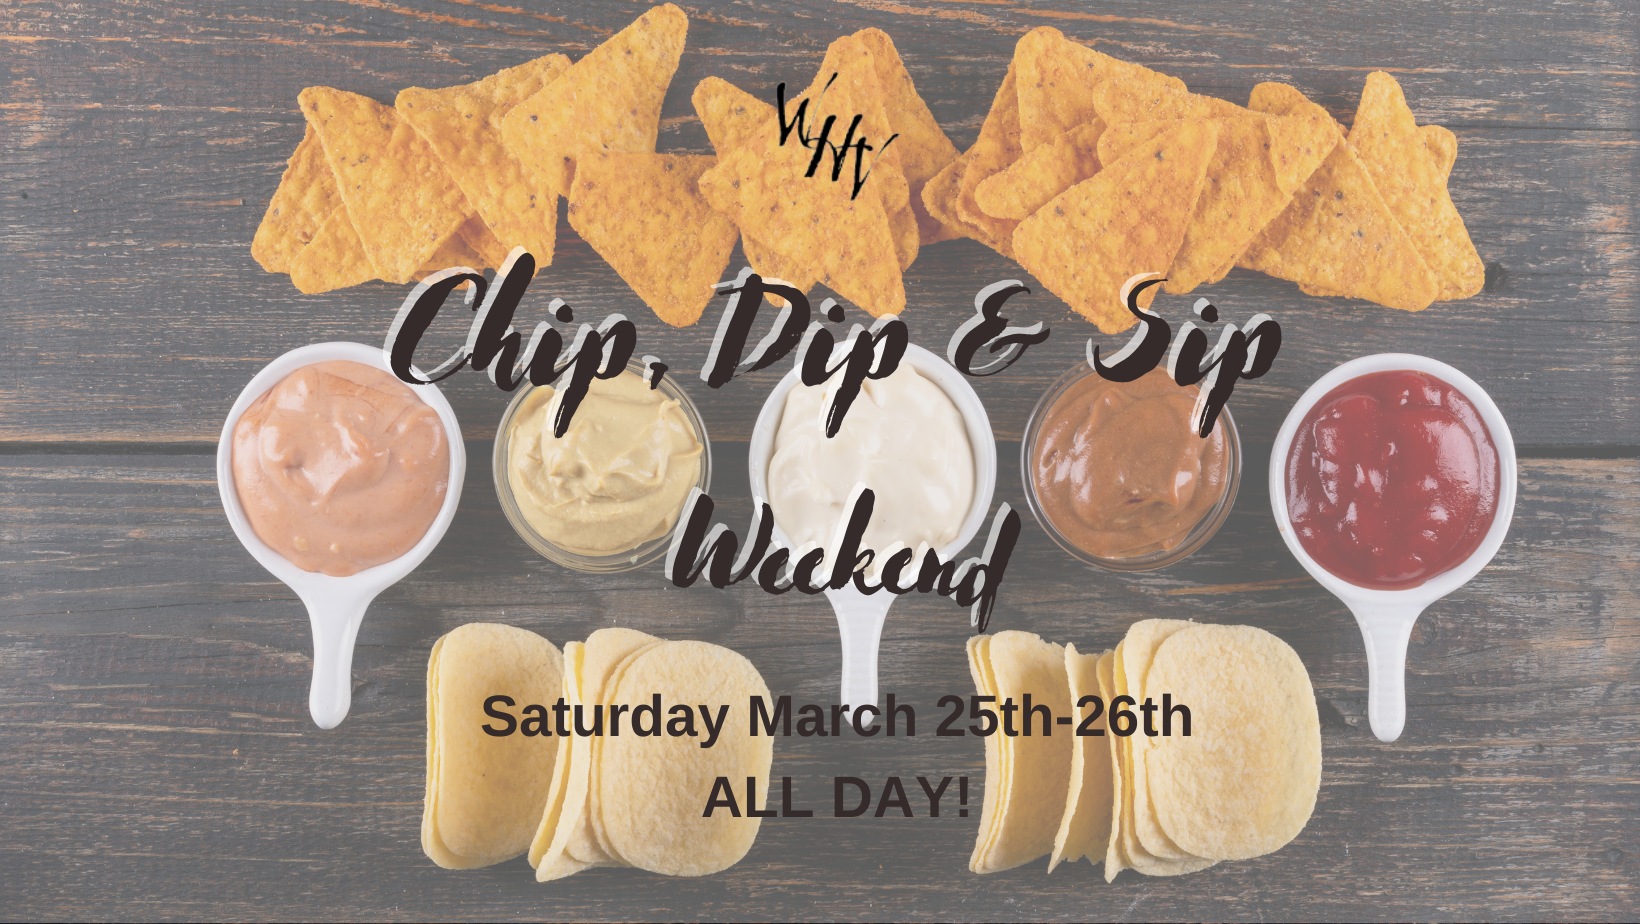 Chip, Dip, & Sip Weekend